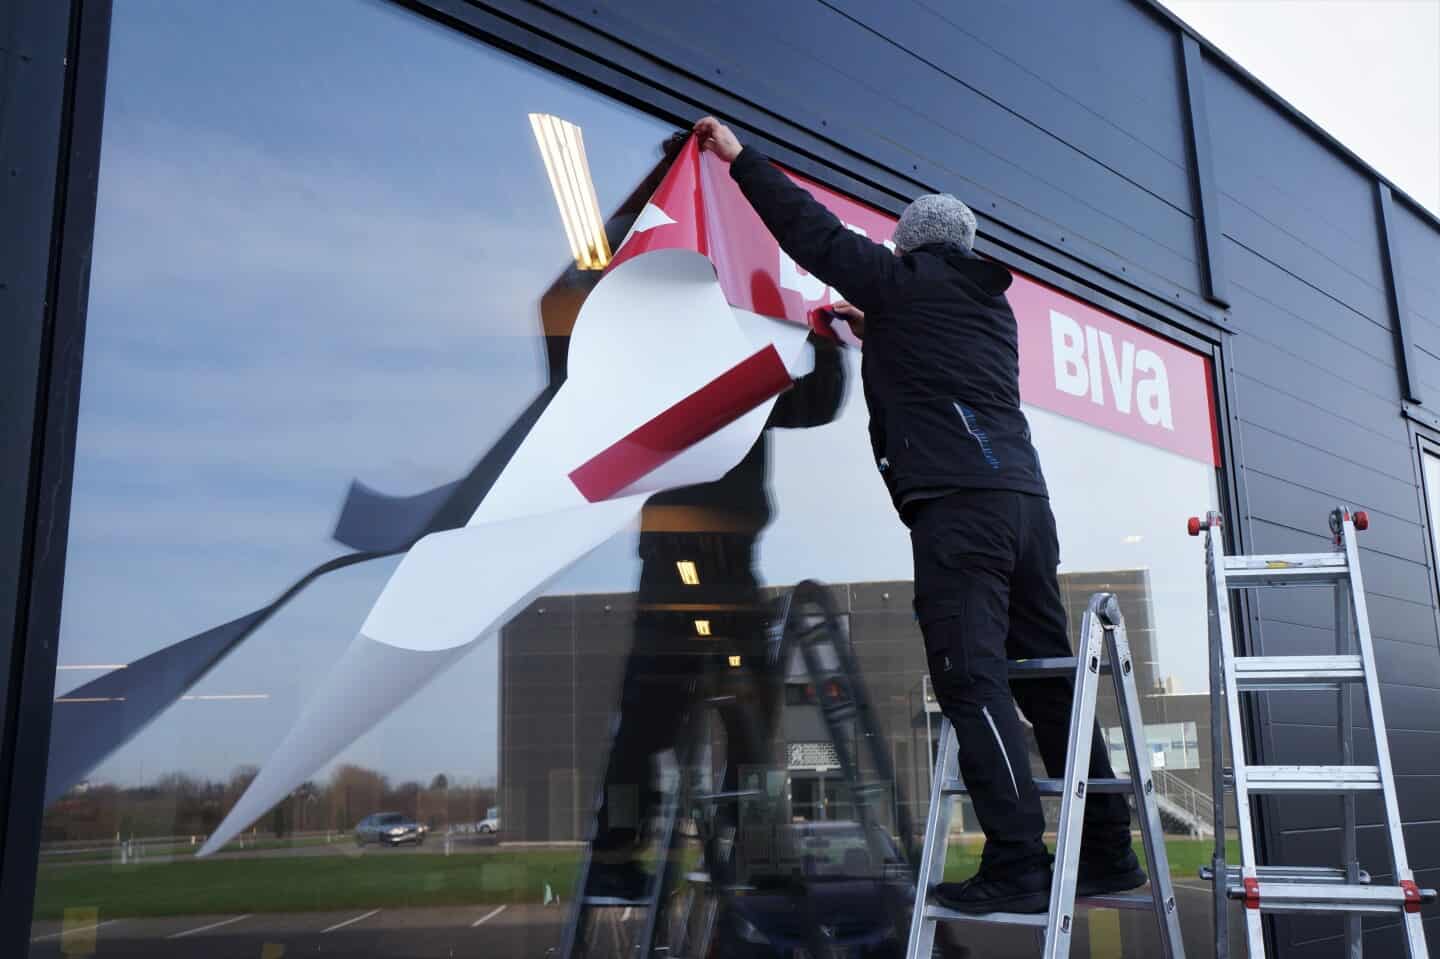 Se billederne: Den første Biva-butik genopstår i Ringe | faa.dk